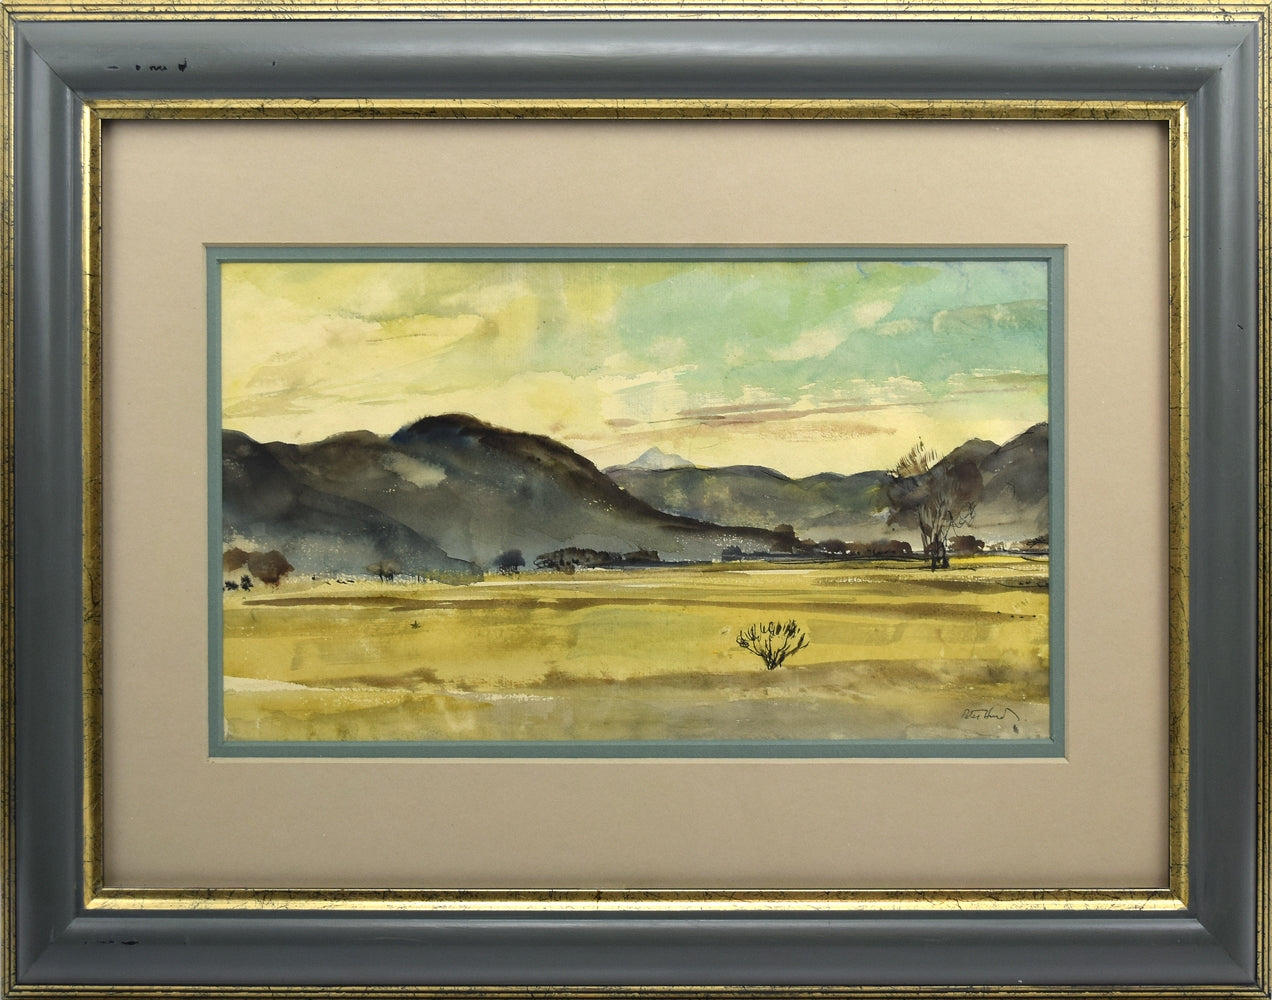 SOLD Peter Hurd (1904-1984) - Desert Landscape